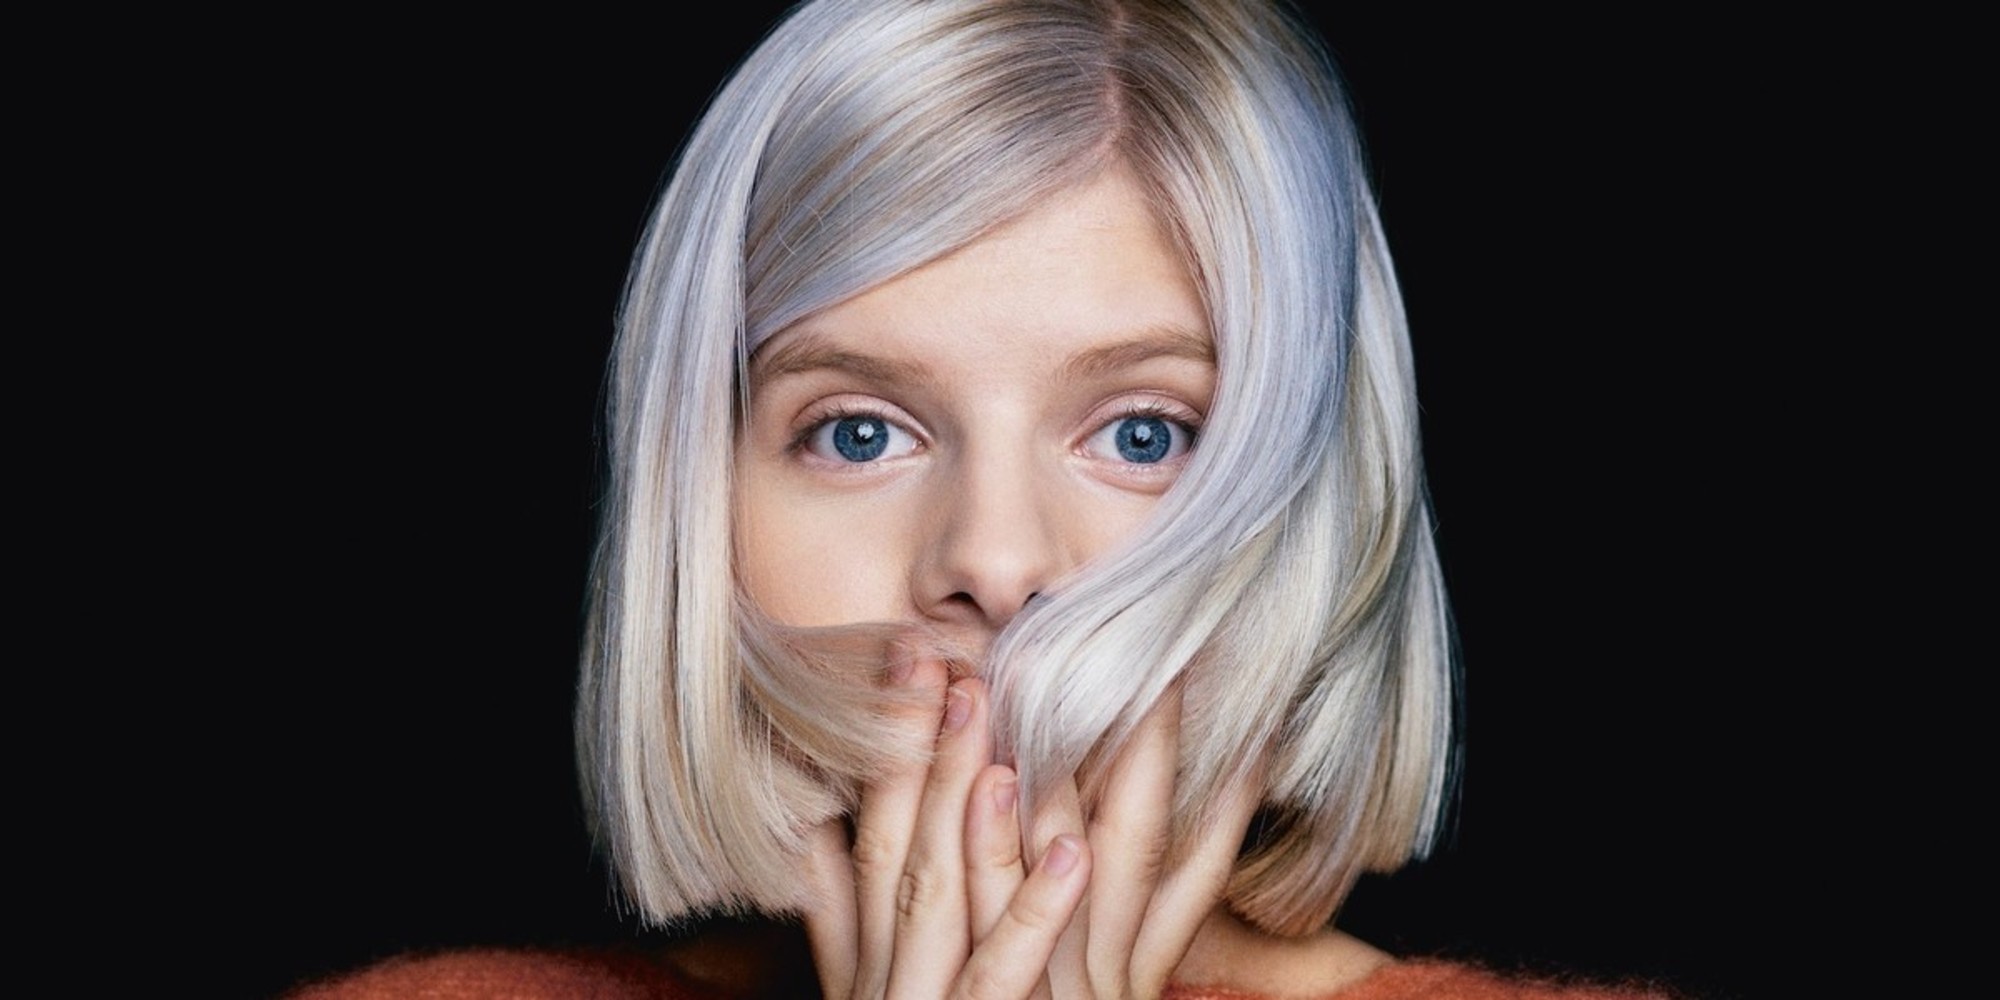 Women Aurora Aksnes Musician Singer White Hair Short Hair Looking At Viewer Blue Eyes Hair In Face N 2000x1000